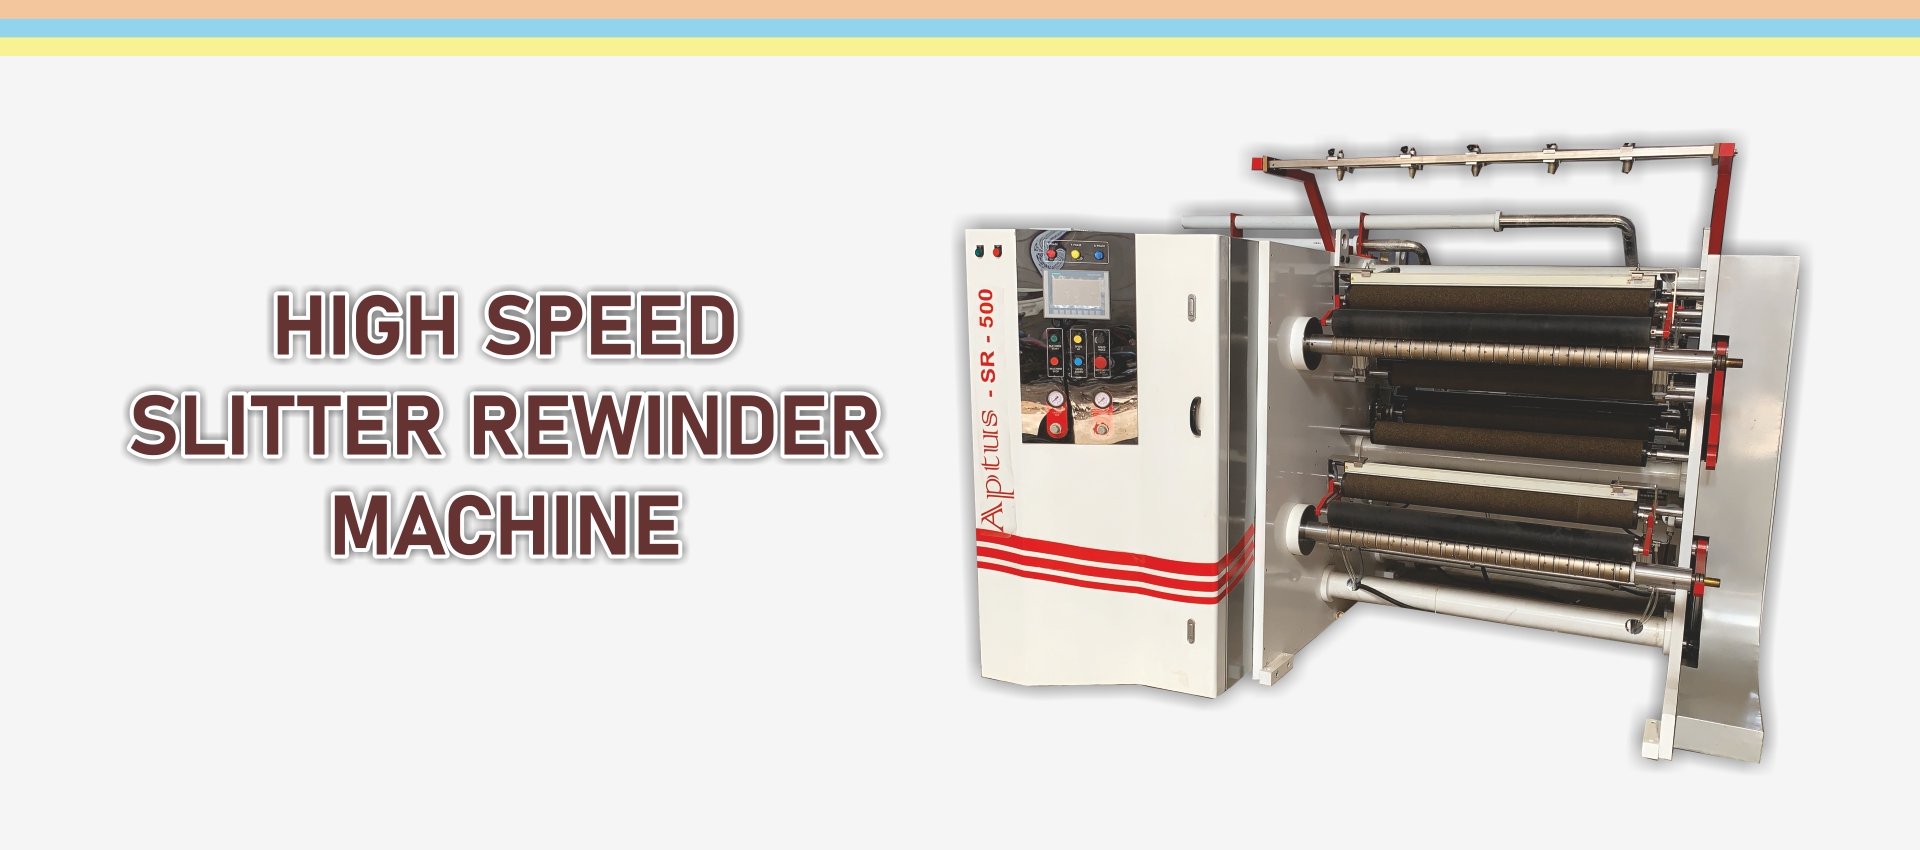 High Speed Slitter Rewinder Machine